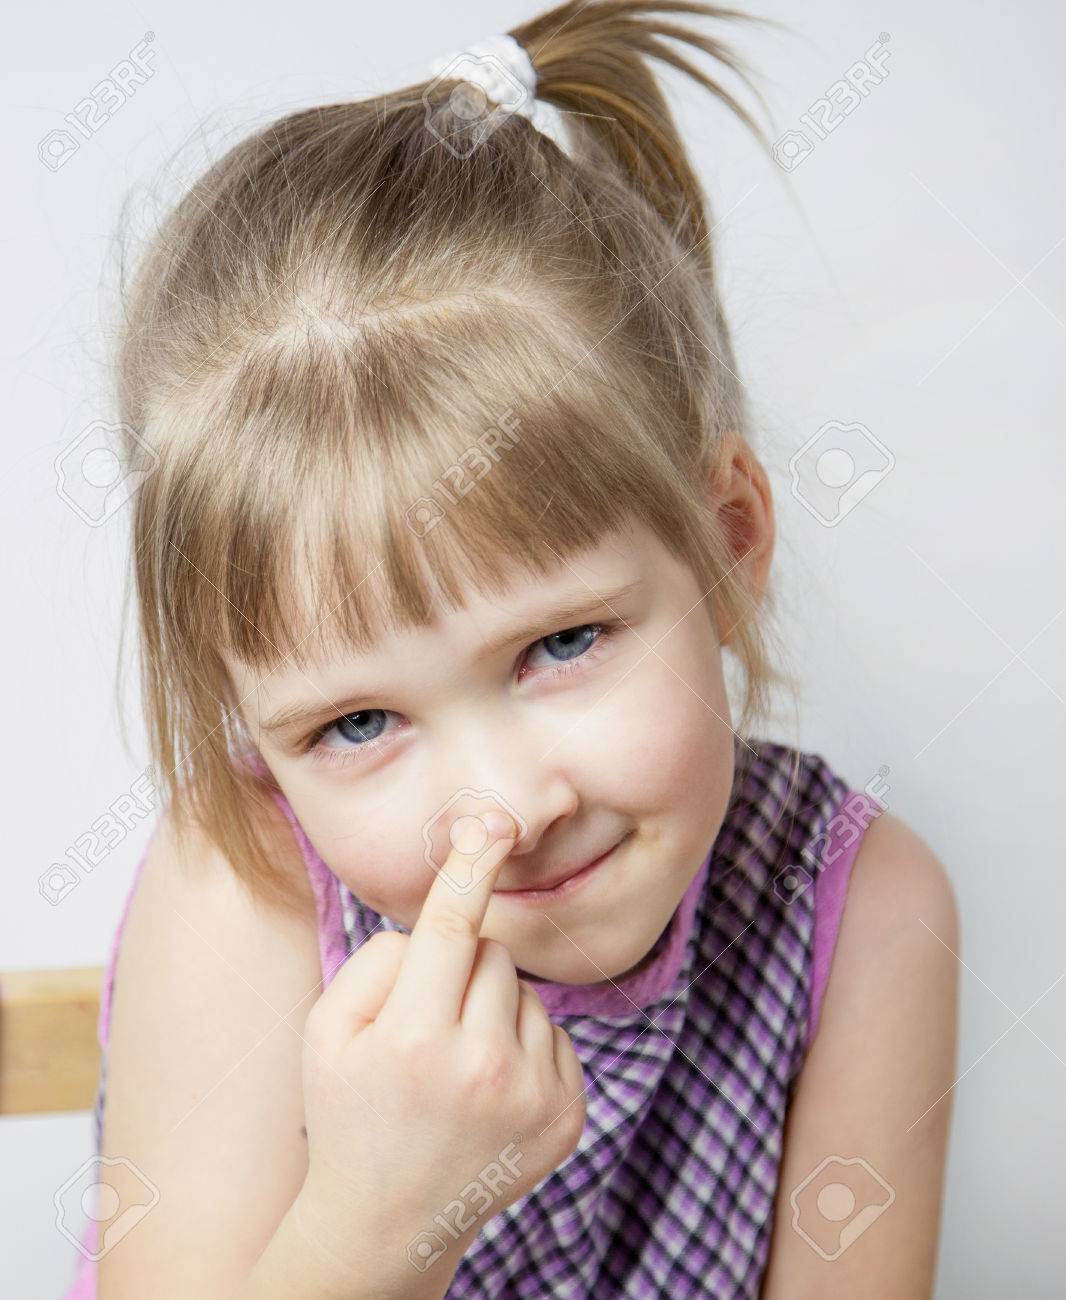 41348987-little-girl-touching-her-nose-closeup-portrait.jpg